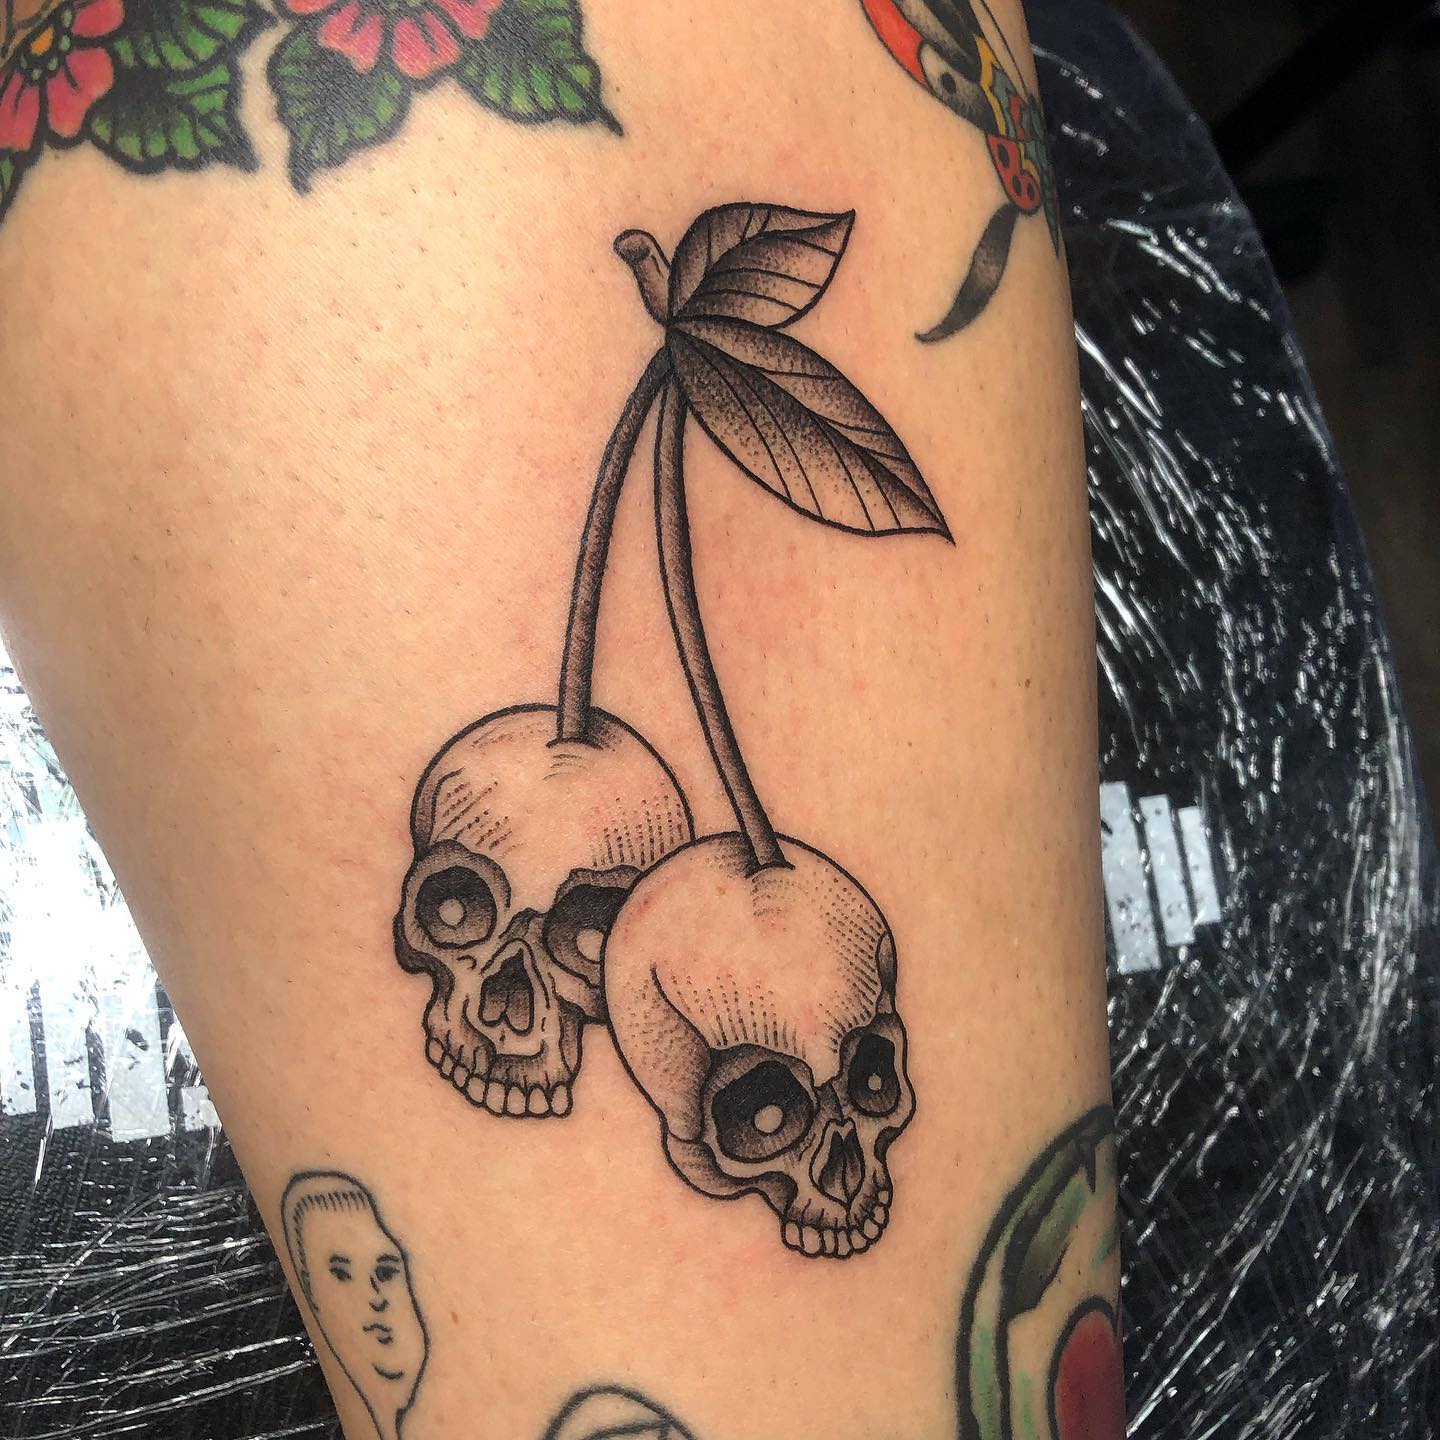 Skull cherries  Rockabilly tattoos Cherry tattoos Girly skull tattoos